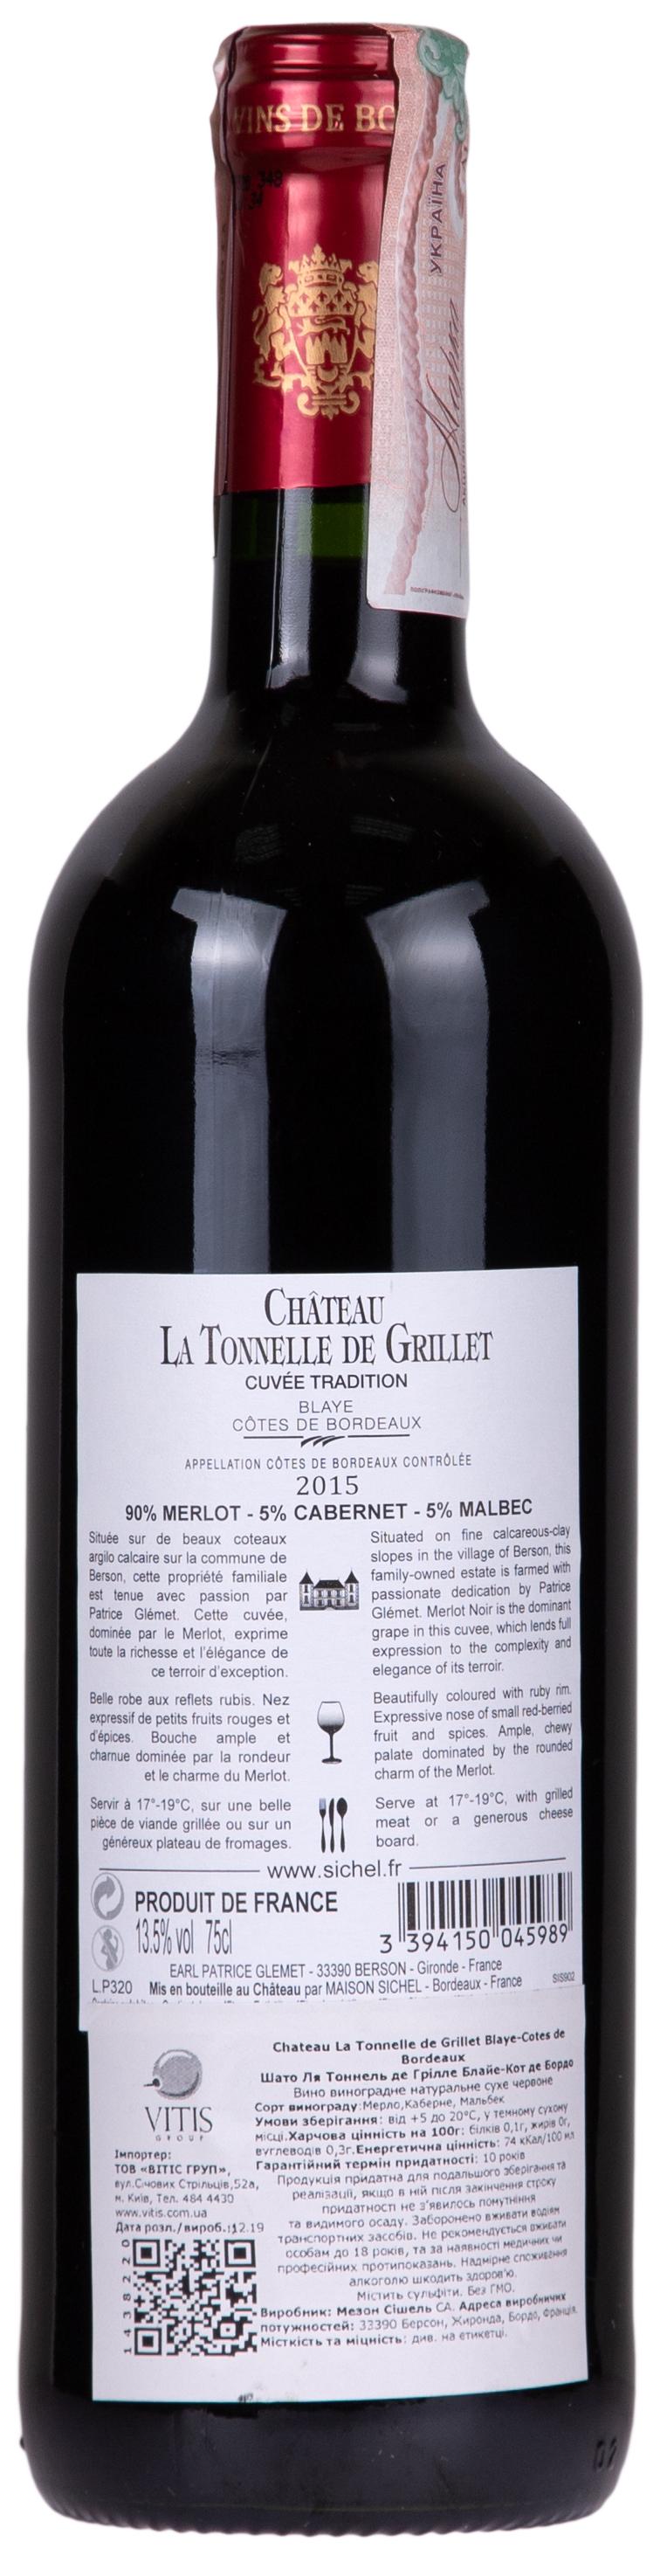 Chateau La Tonnelle de Grillet Cotes de Blaye 2015 Set 6 Bottles - 2